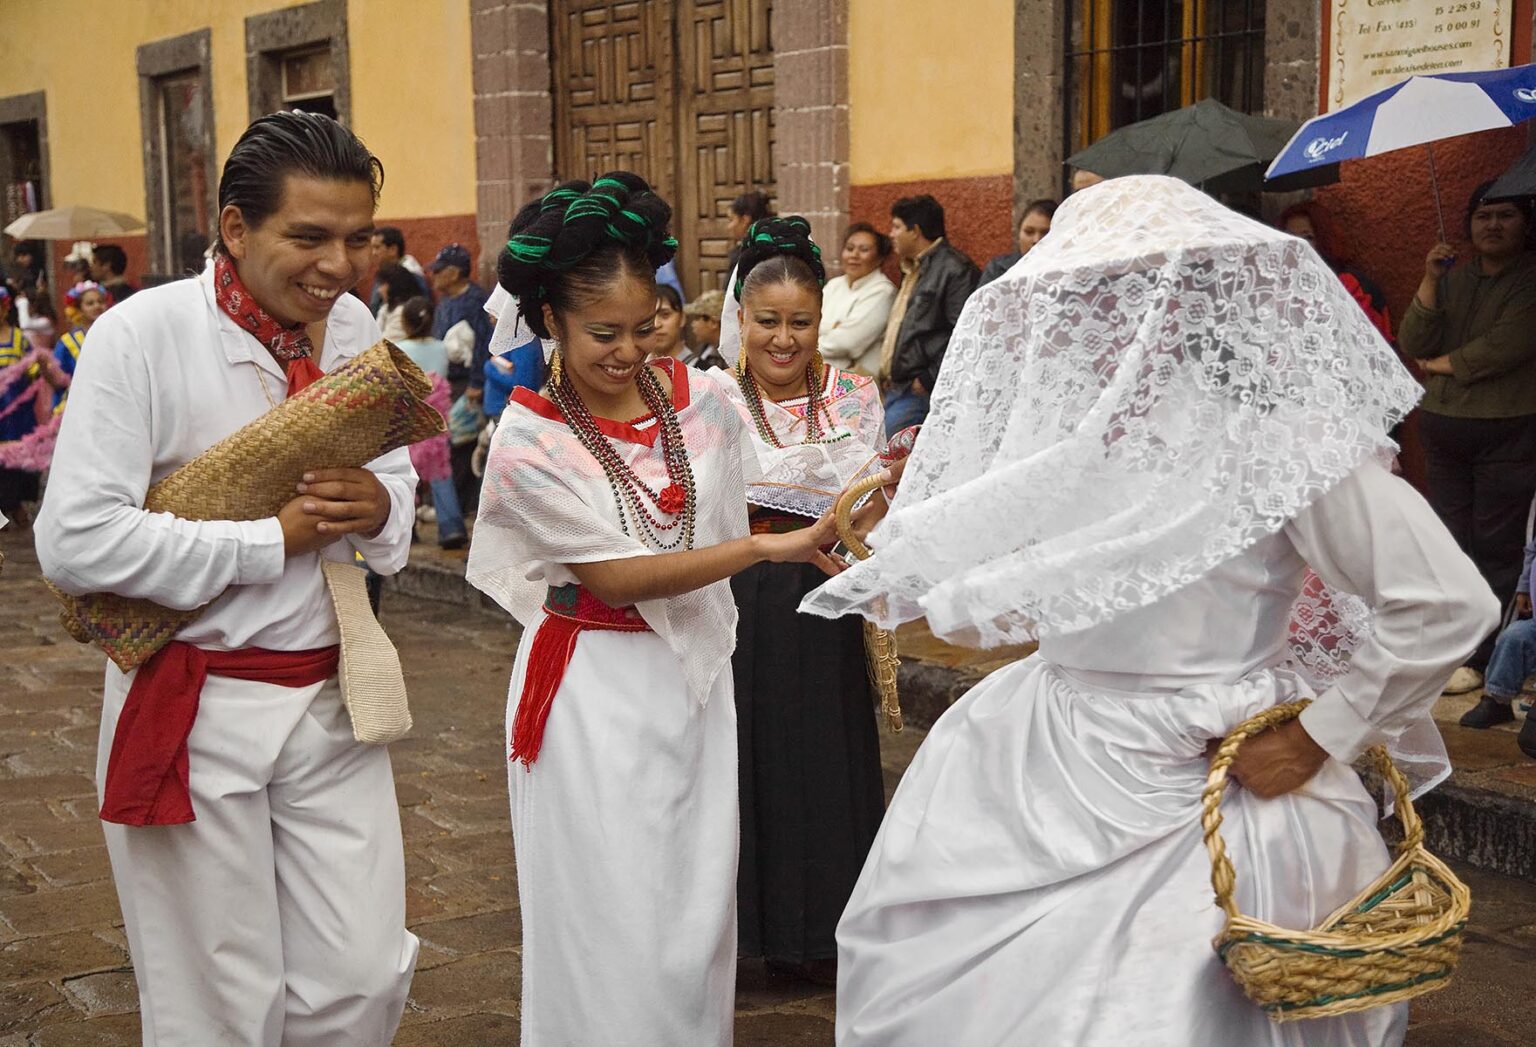 MEXICANS in traditional PEASANT COSTUME & WEDDING DRESS walk in the FESTIVAL DE SAN MIGUEL ARCHANGEL PARADE - SAN MIGUEL DE ALLENDE, MEXICO